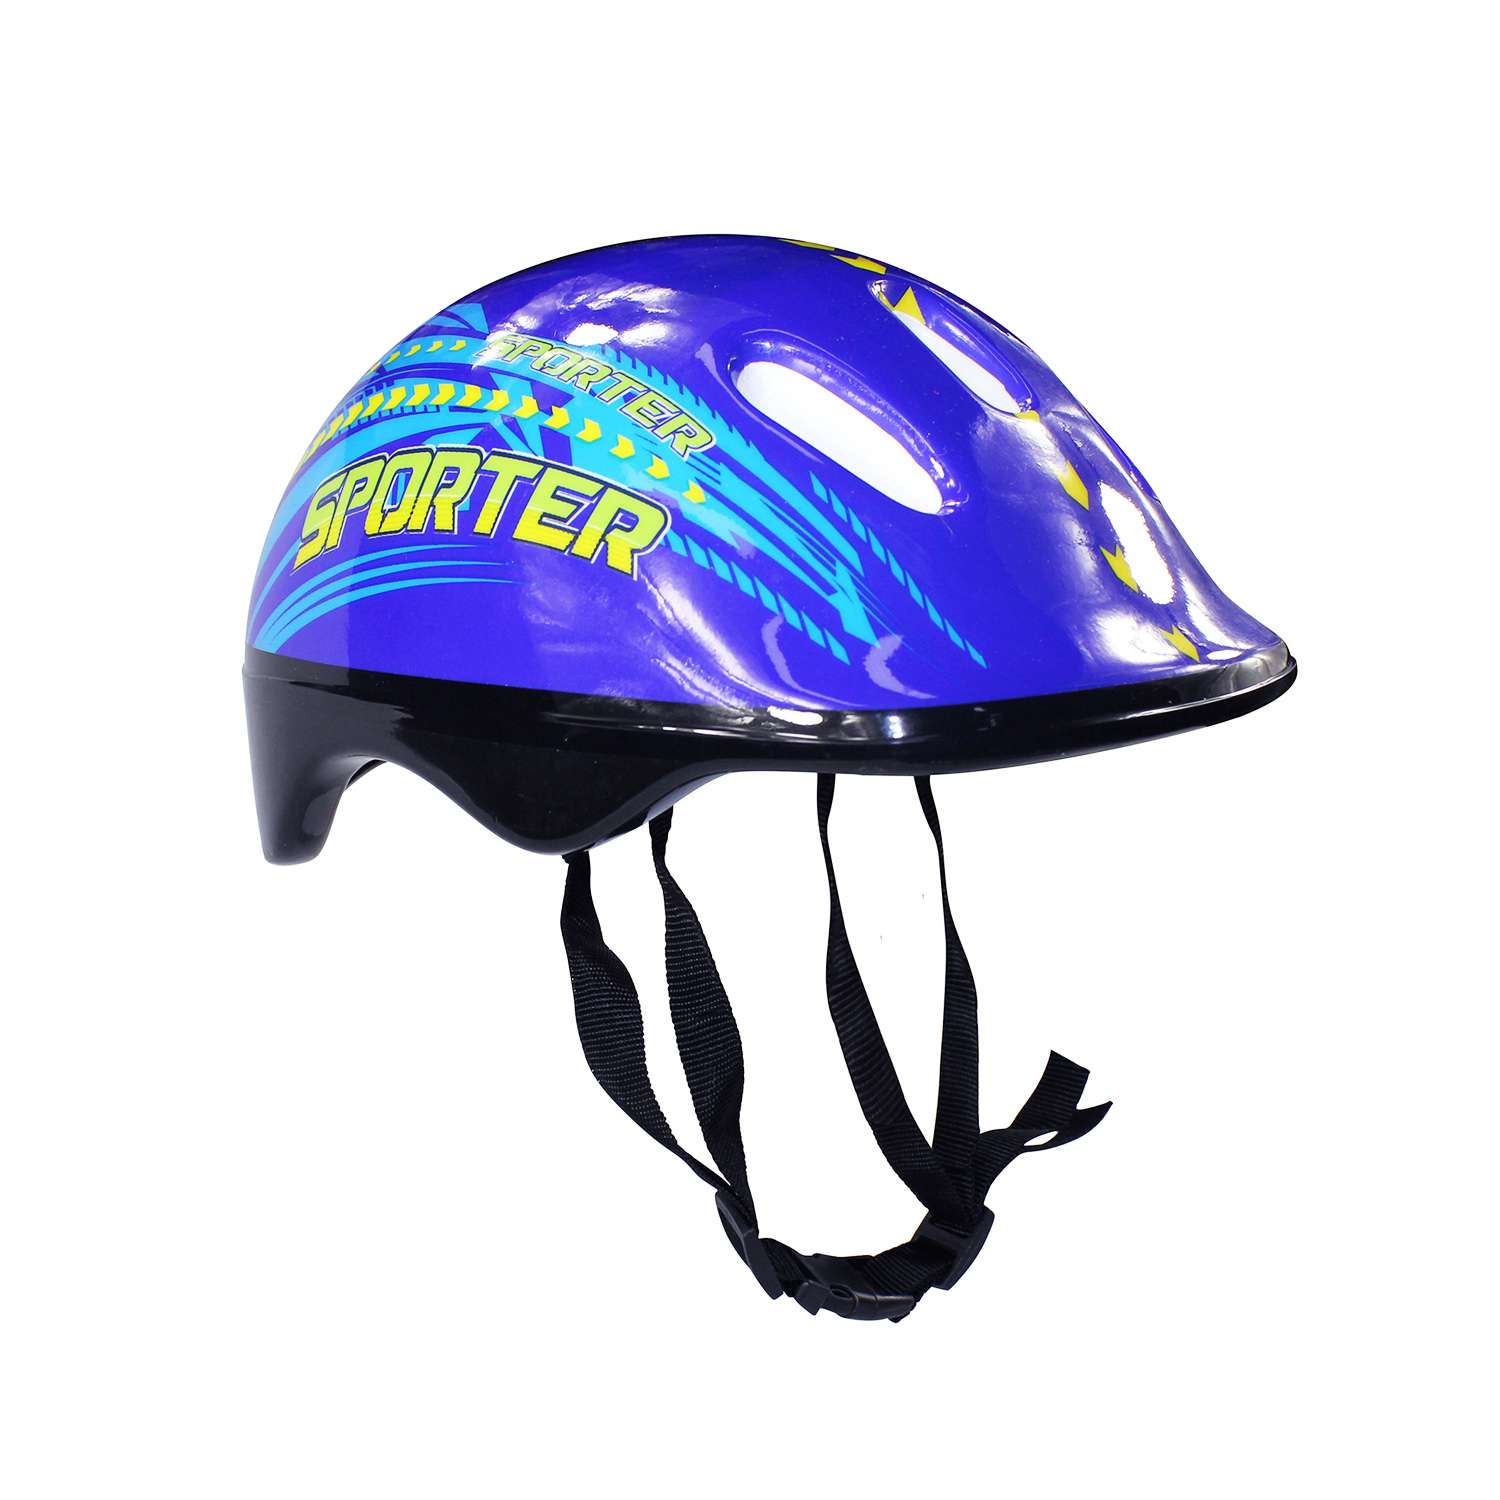 Набор роликовые коньки Alpha Caprice раздвижные Sporter Blue шлем и набор защиты в сумке размер XS 27-30 - фото 3